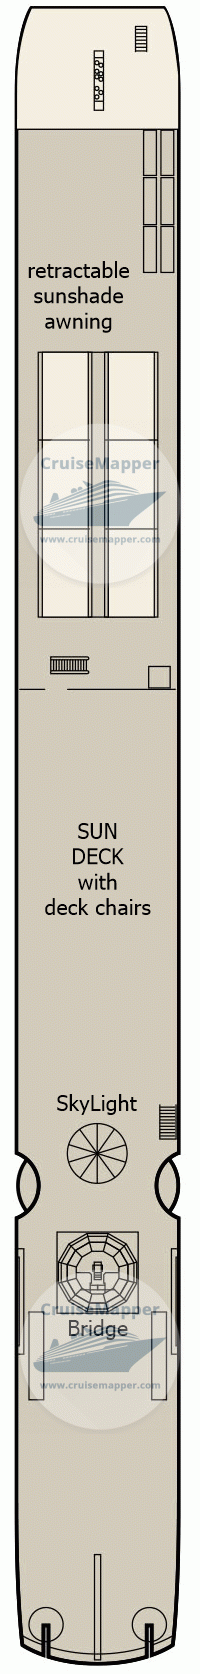 MS Bellejour Deck 04 - Sun